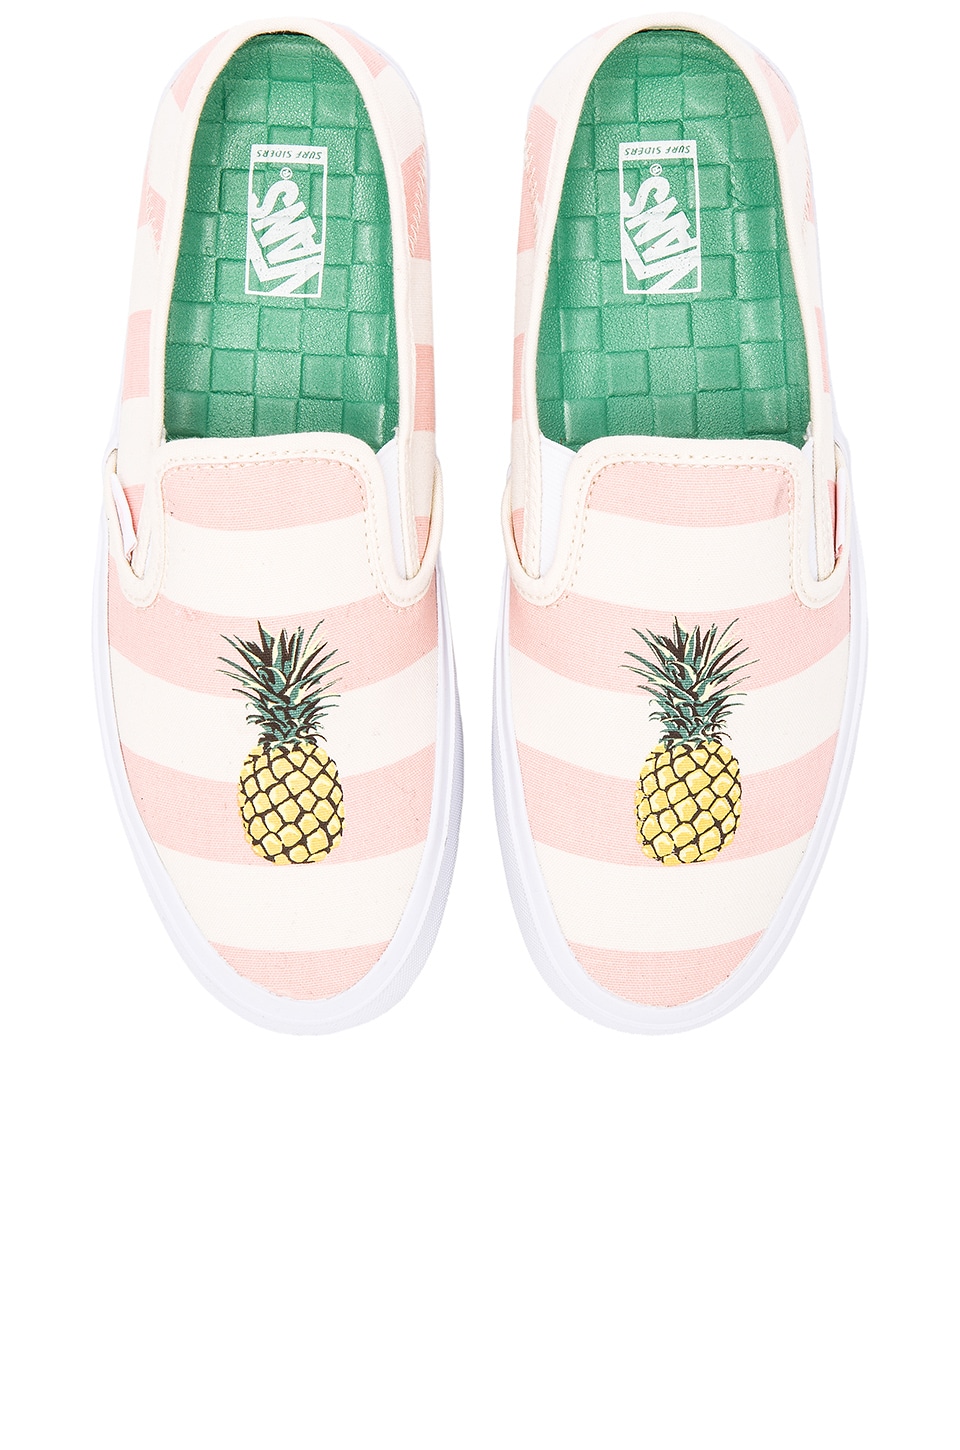 pineapple vans